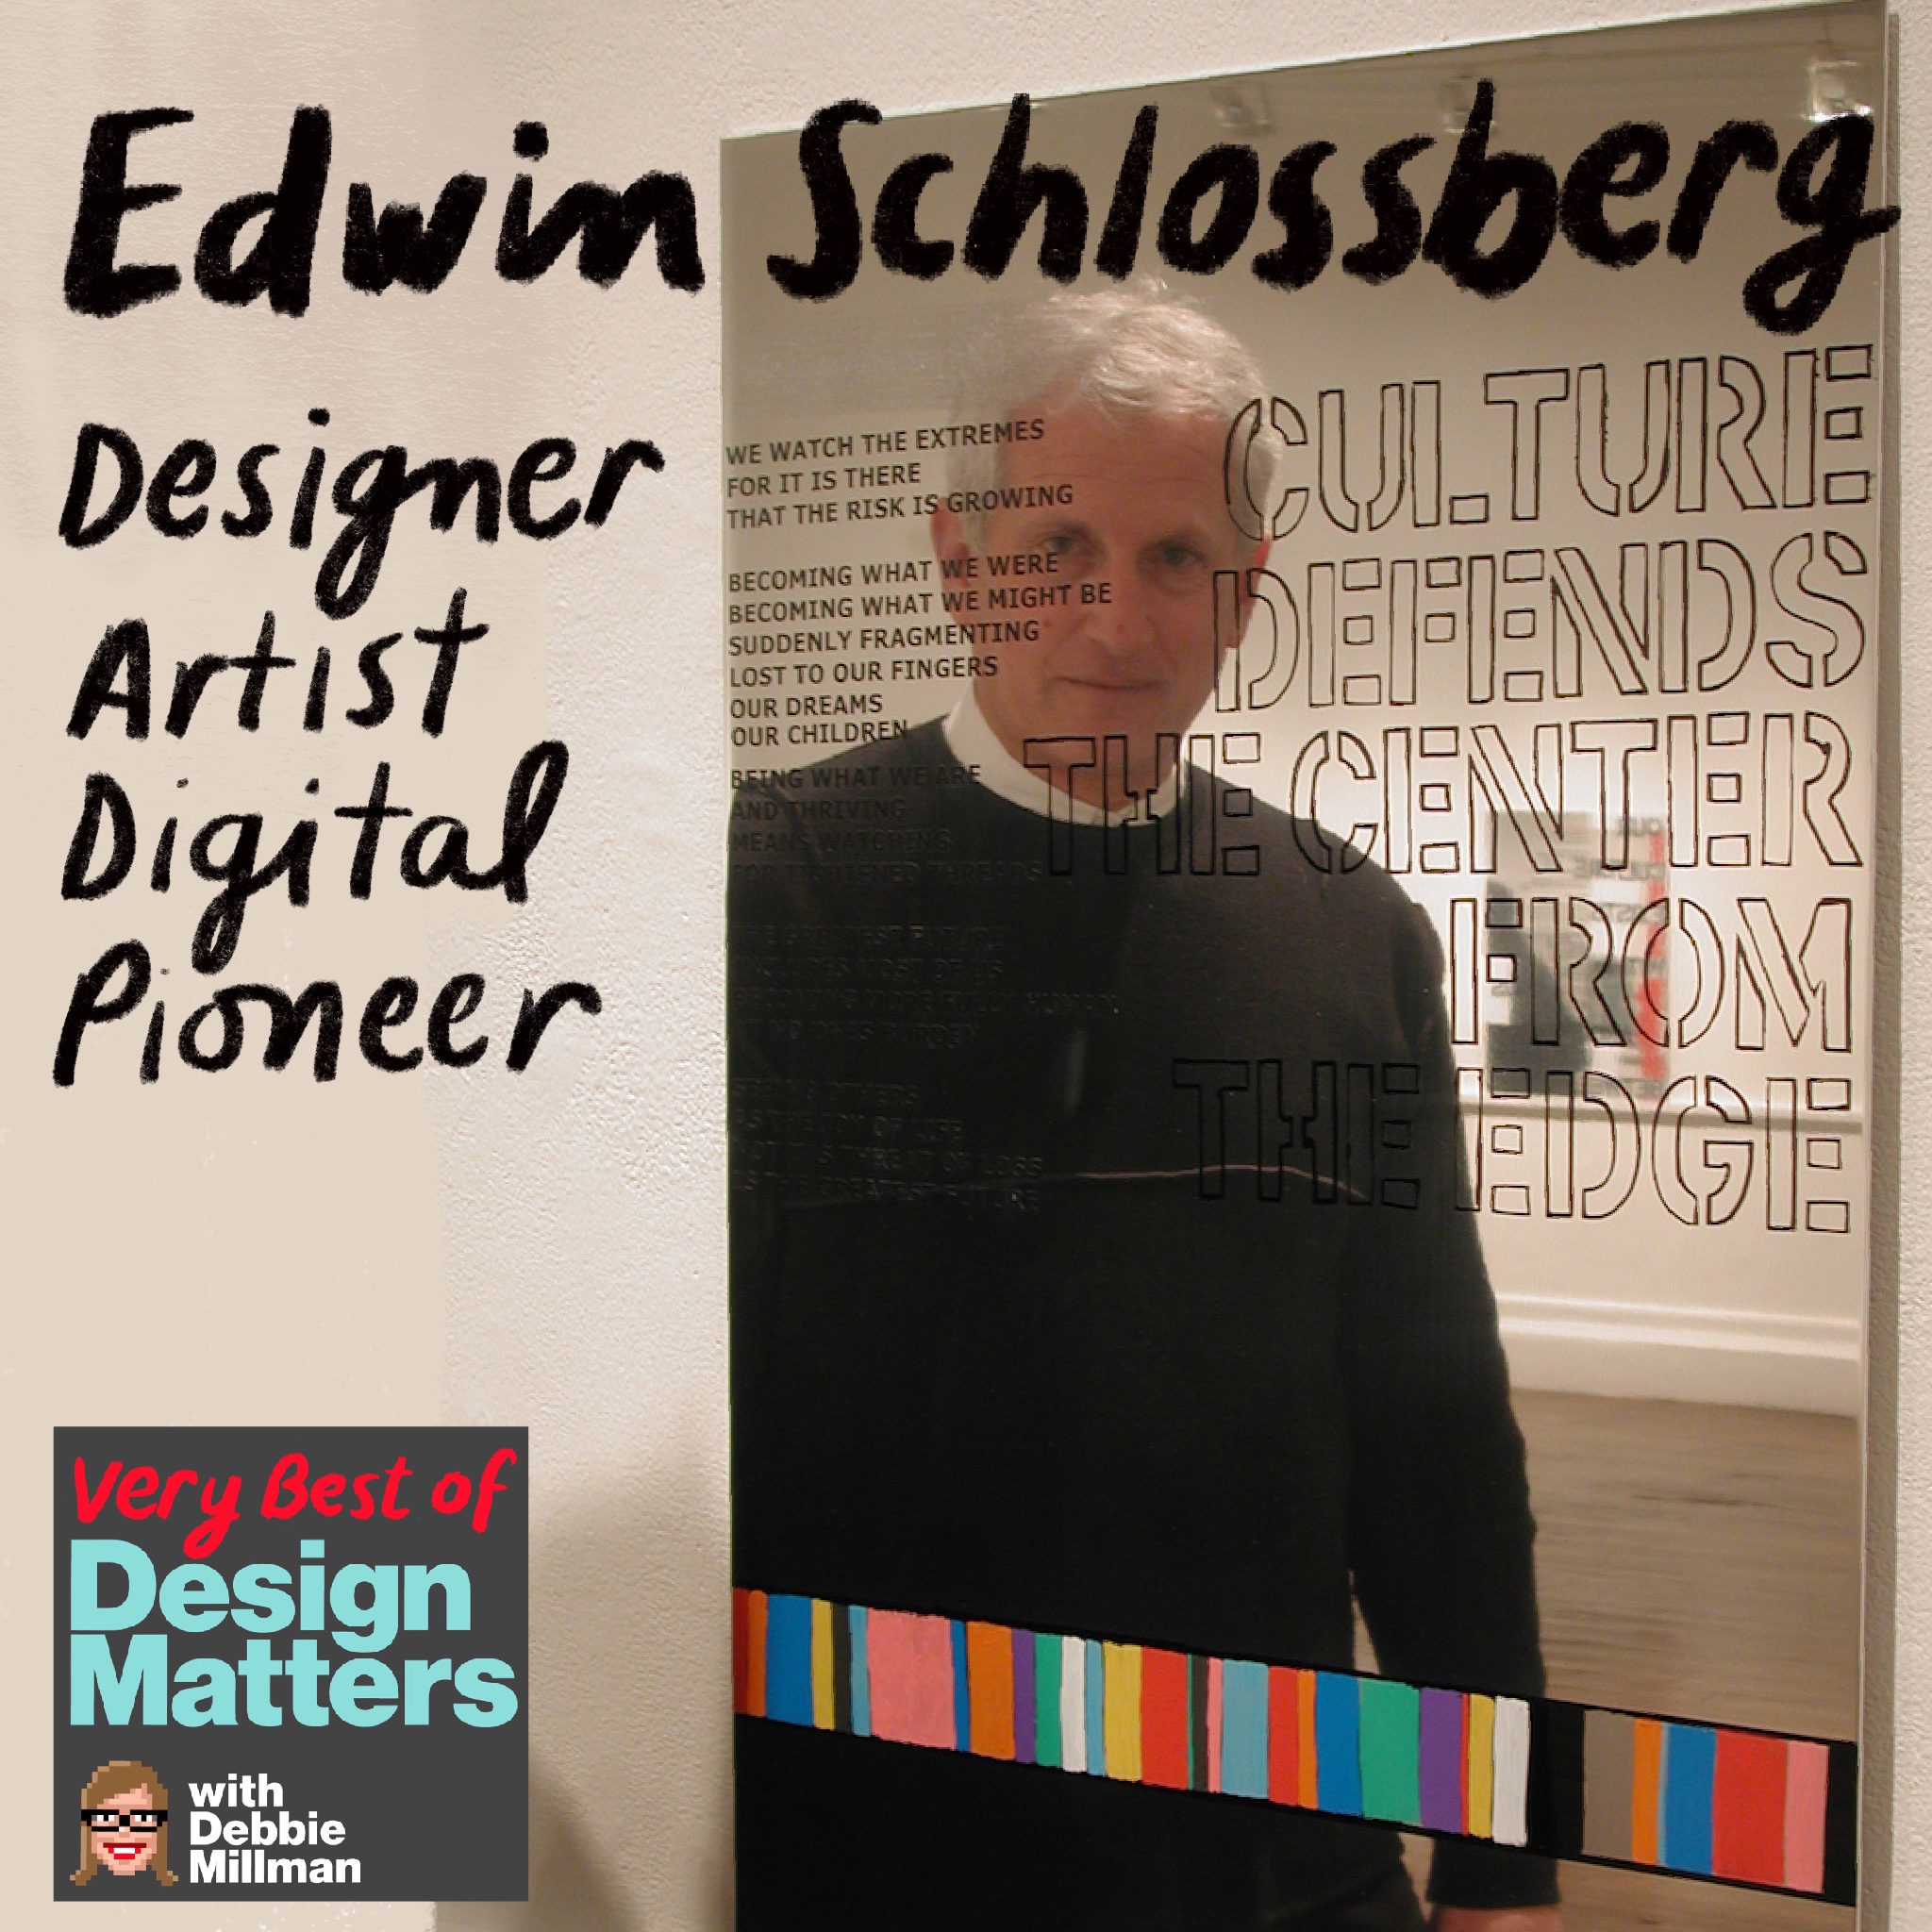 Best of Design Matters: Edwin Schlossberg